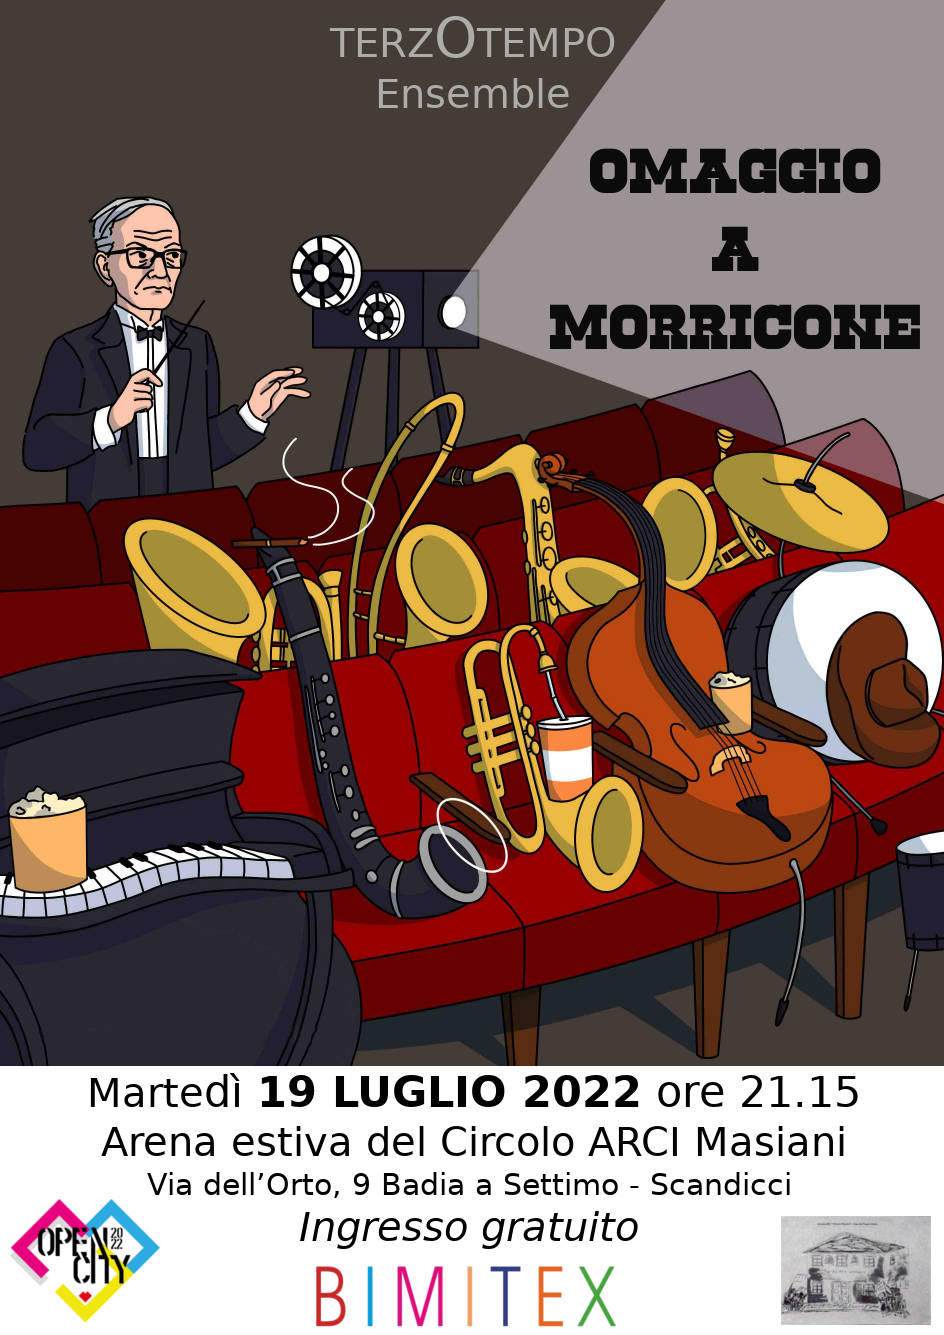 Locandina del concerto dell'Ensemble Terzo Tempo "Omaggio a Morricone" a Scandicci